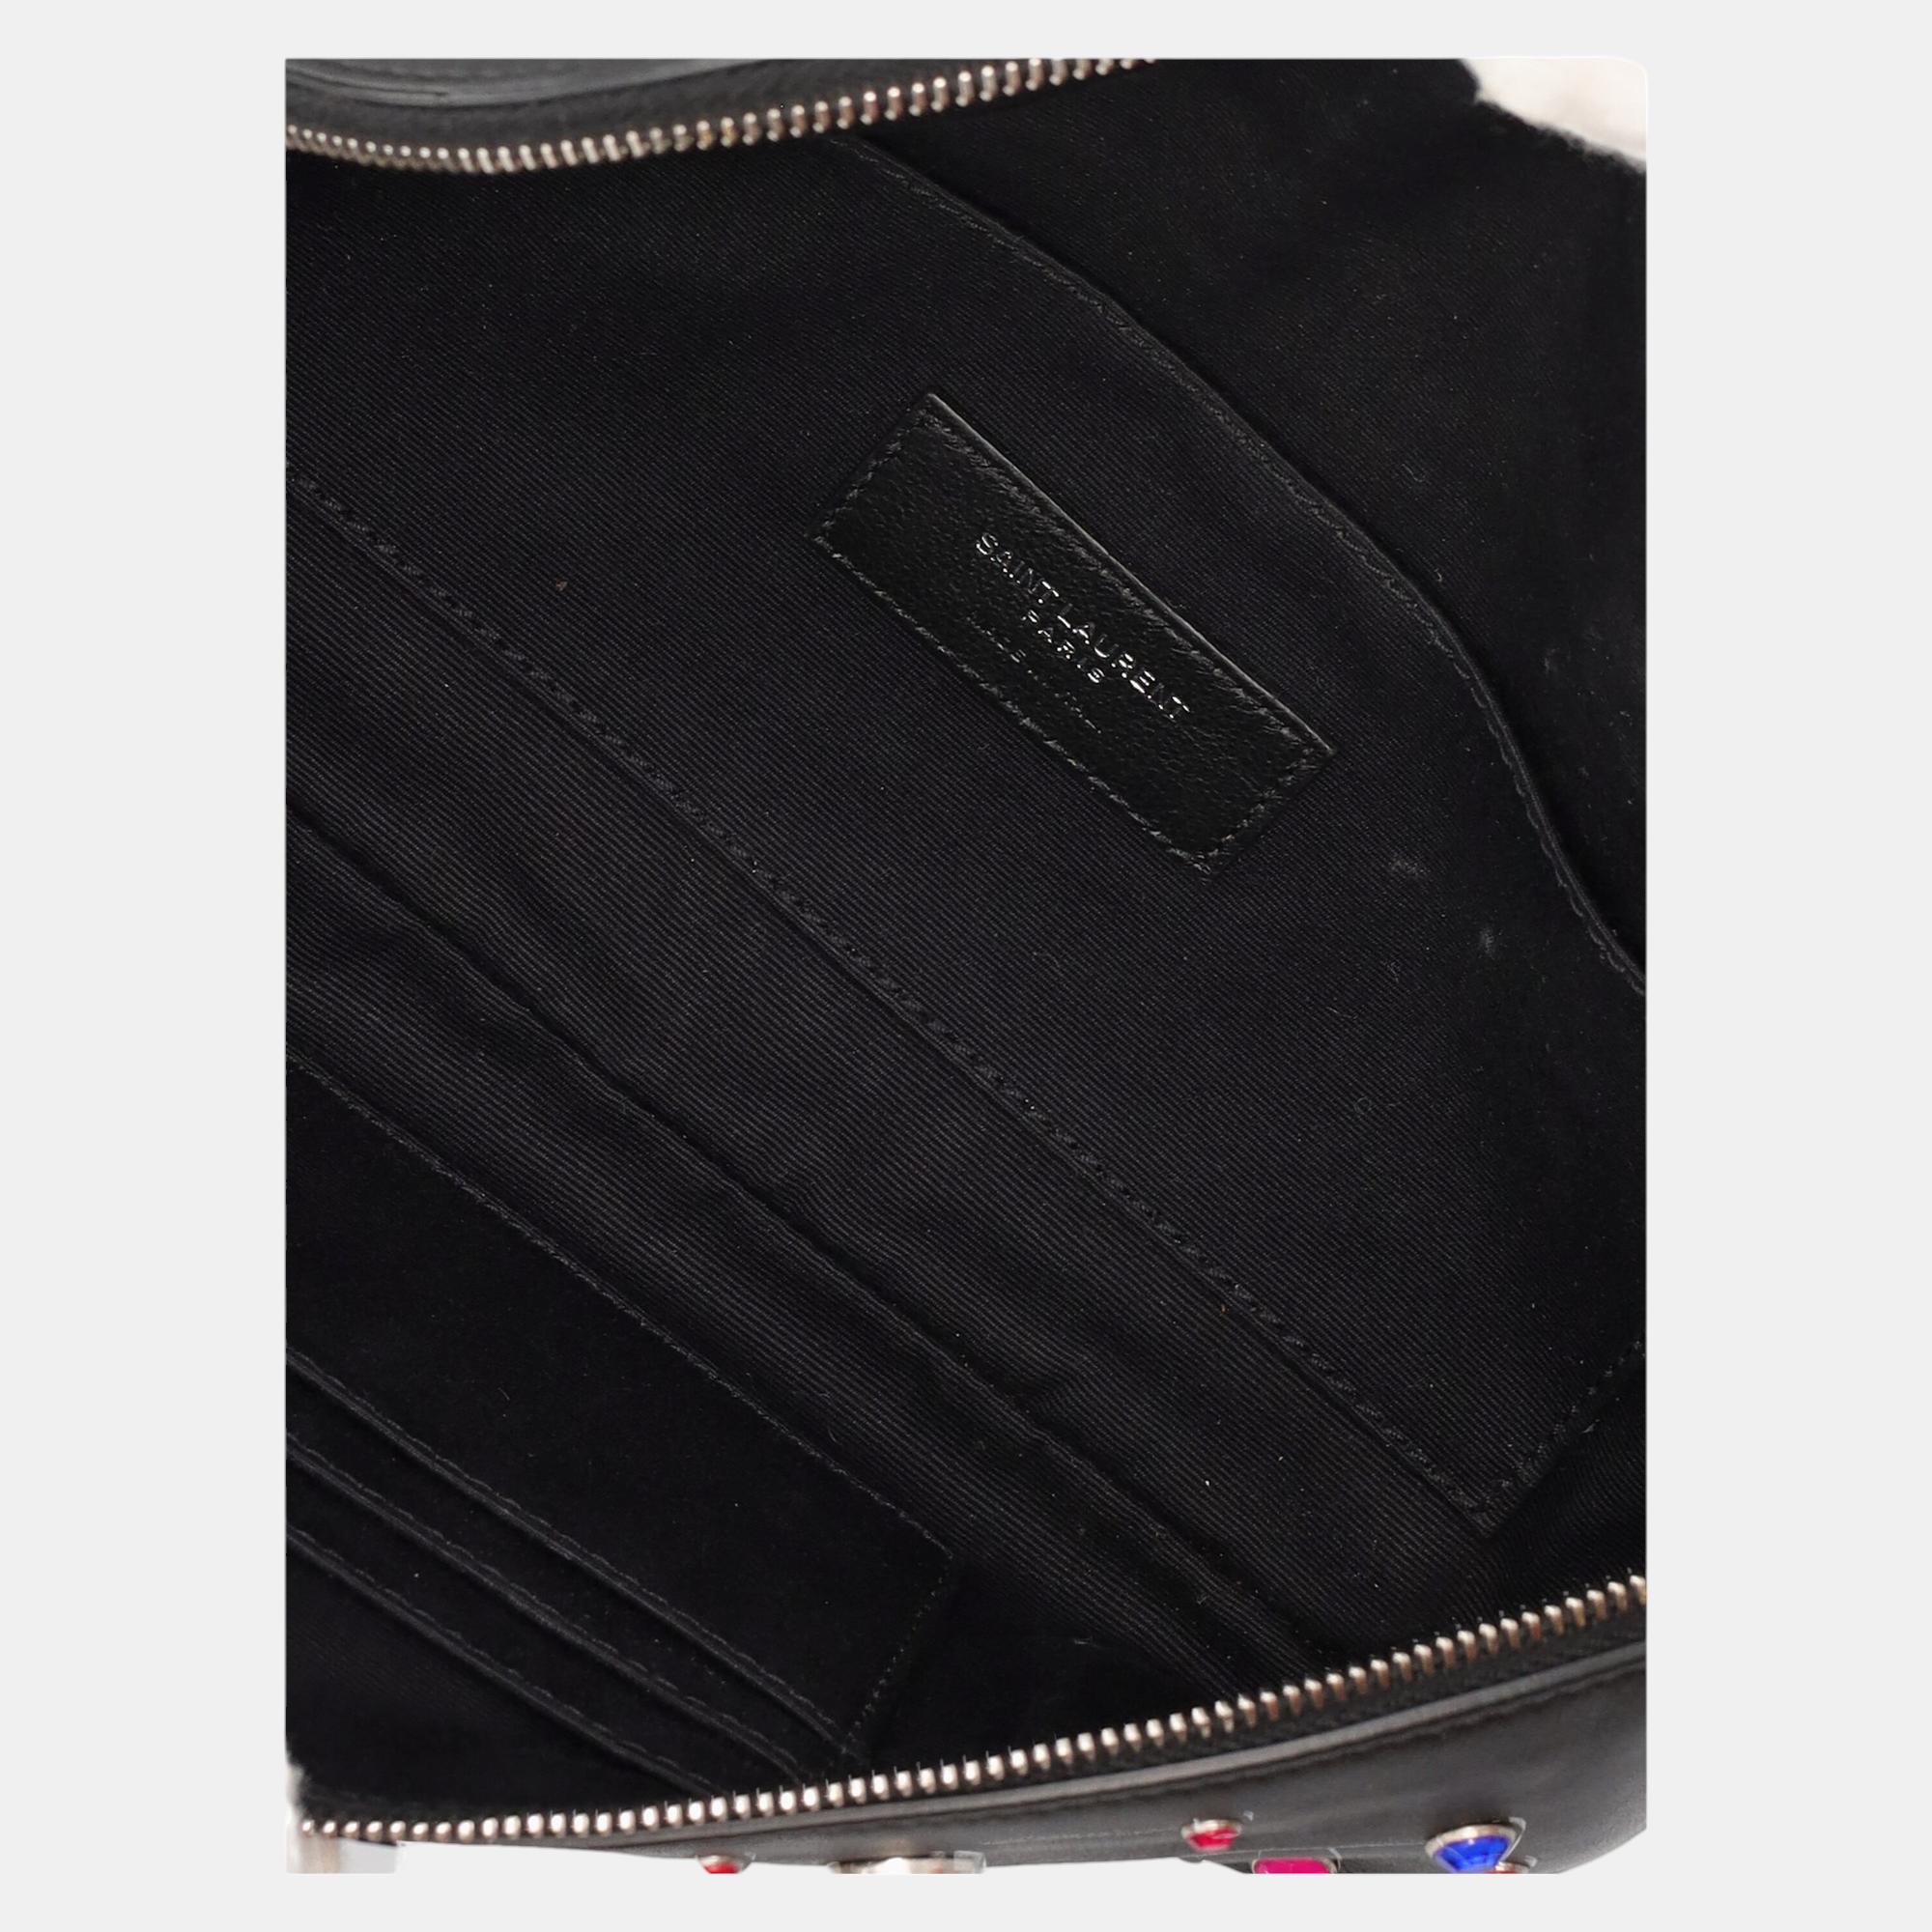 Saint Laurent  Women's Leather Belt Bag - Black - One Size